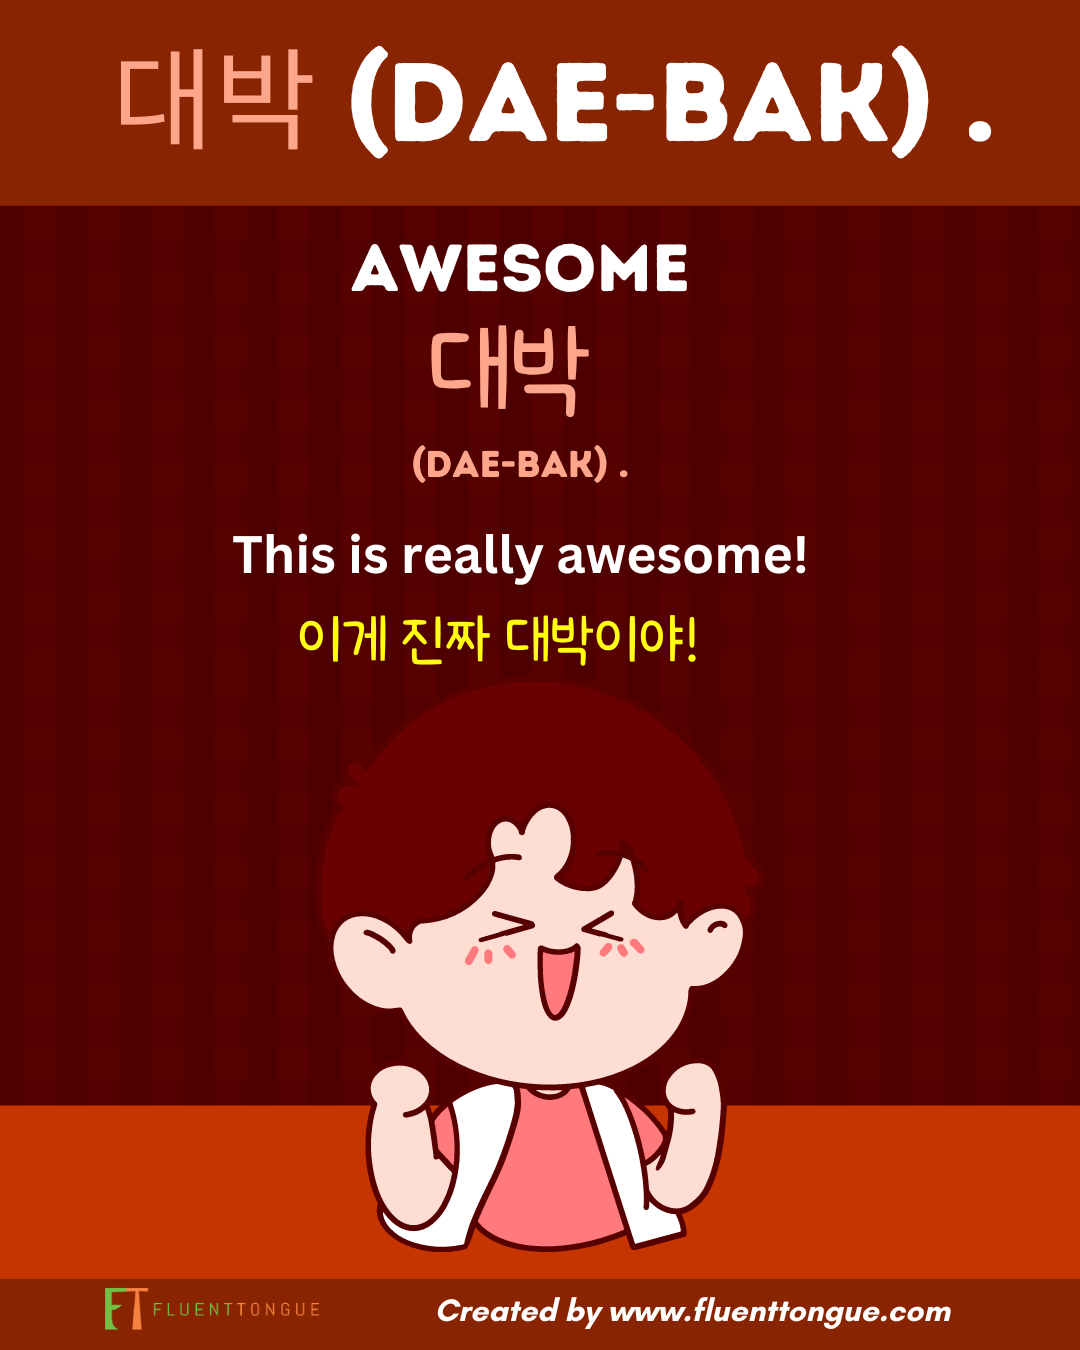 Korean swear words